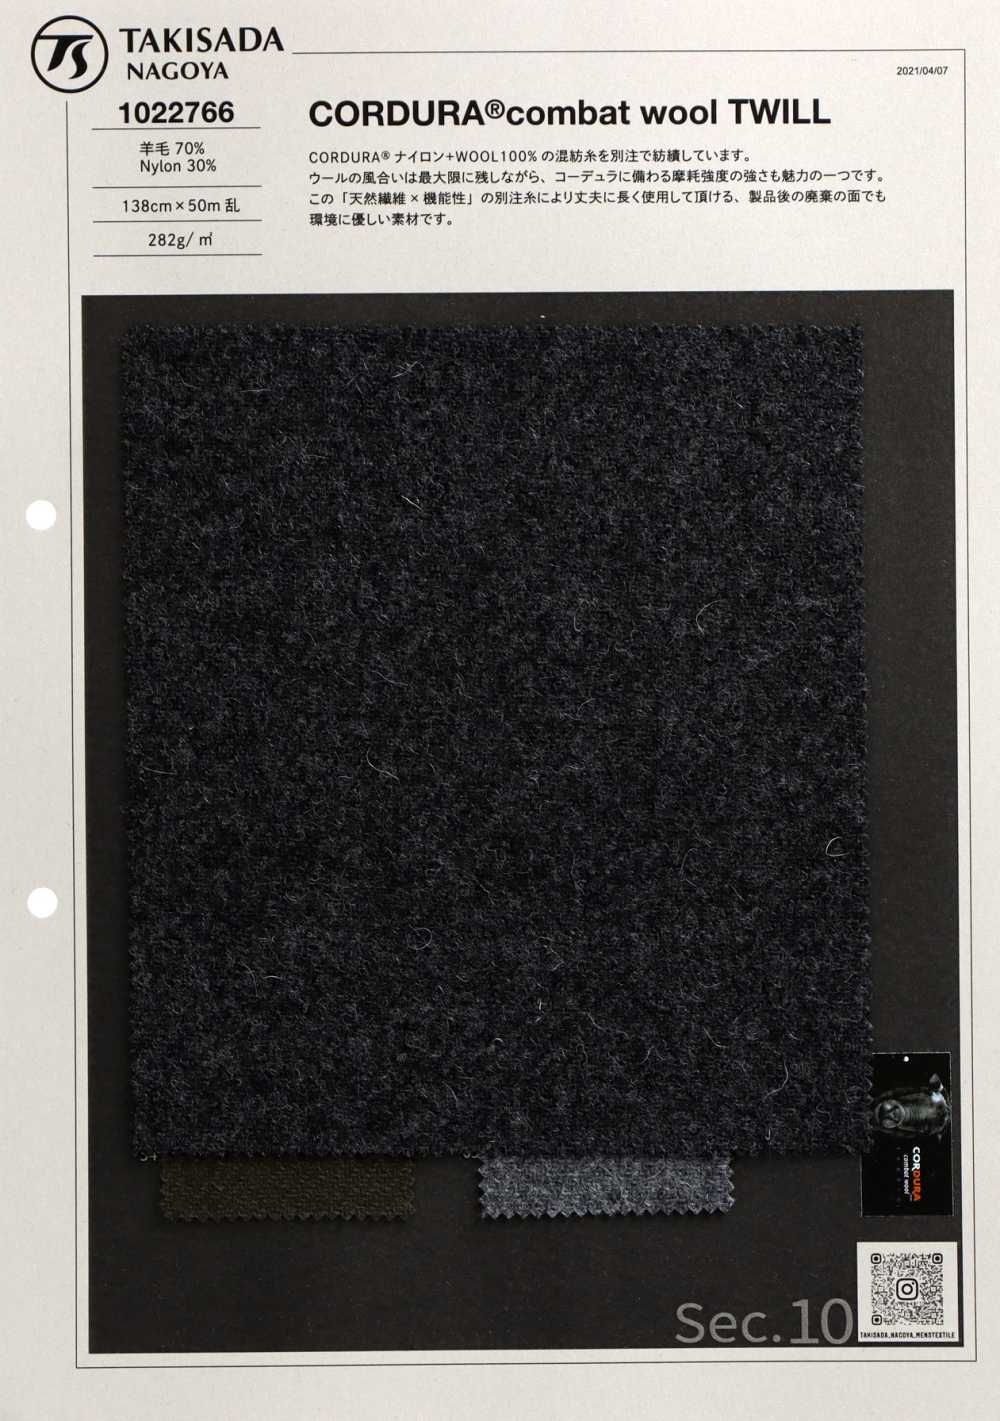 1022766 CORDURA Combat Wool Twill[Textilgewebe] Takisada Nagoya